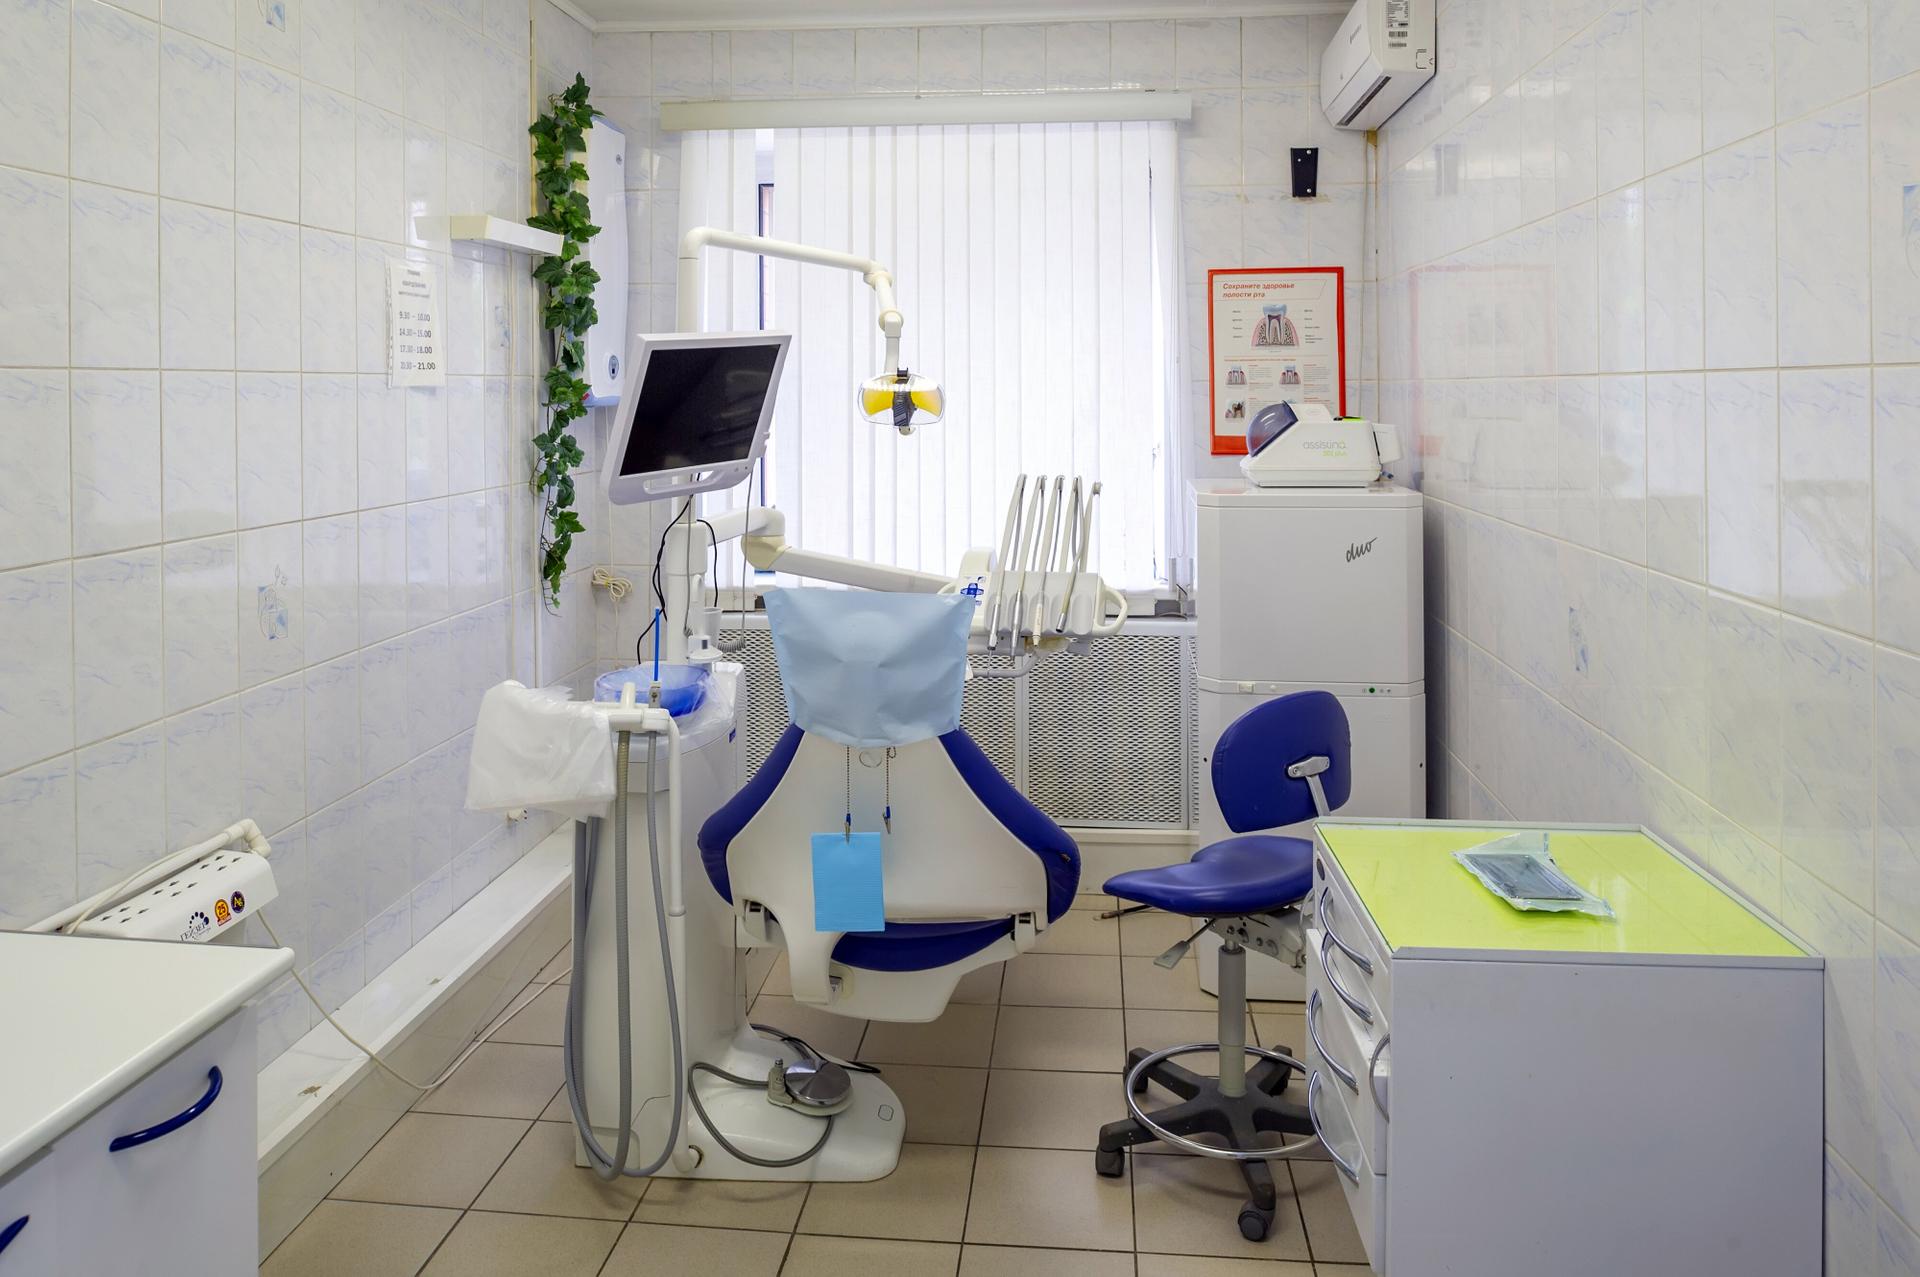 Ала дент. Al dente стоматологическая клиника. Стоматология Дент Воскресенск. Стоматология Дента Климовск.